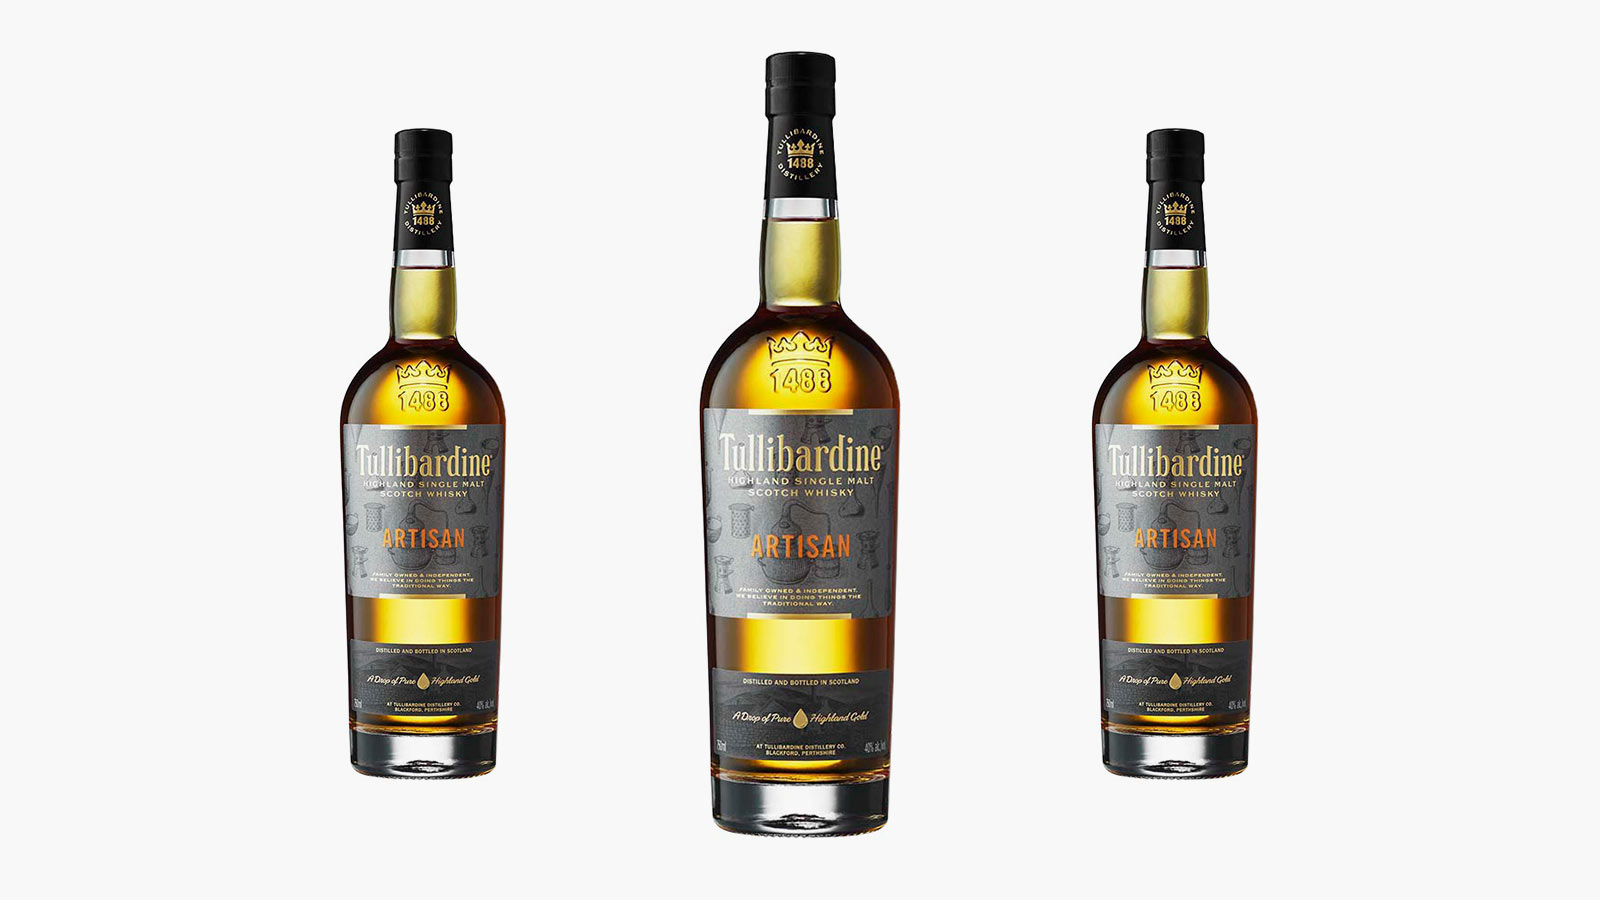 Tullibardine Signature Range 15-Year Highland Single Malt Scotch Whisky